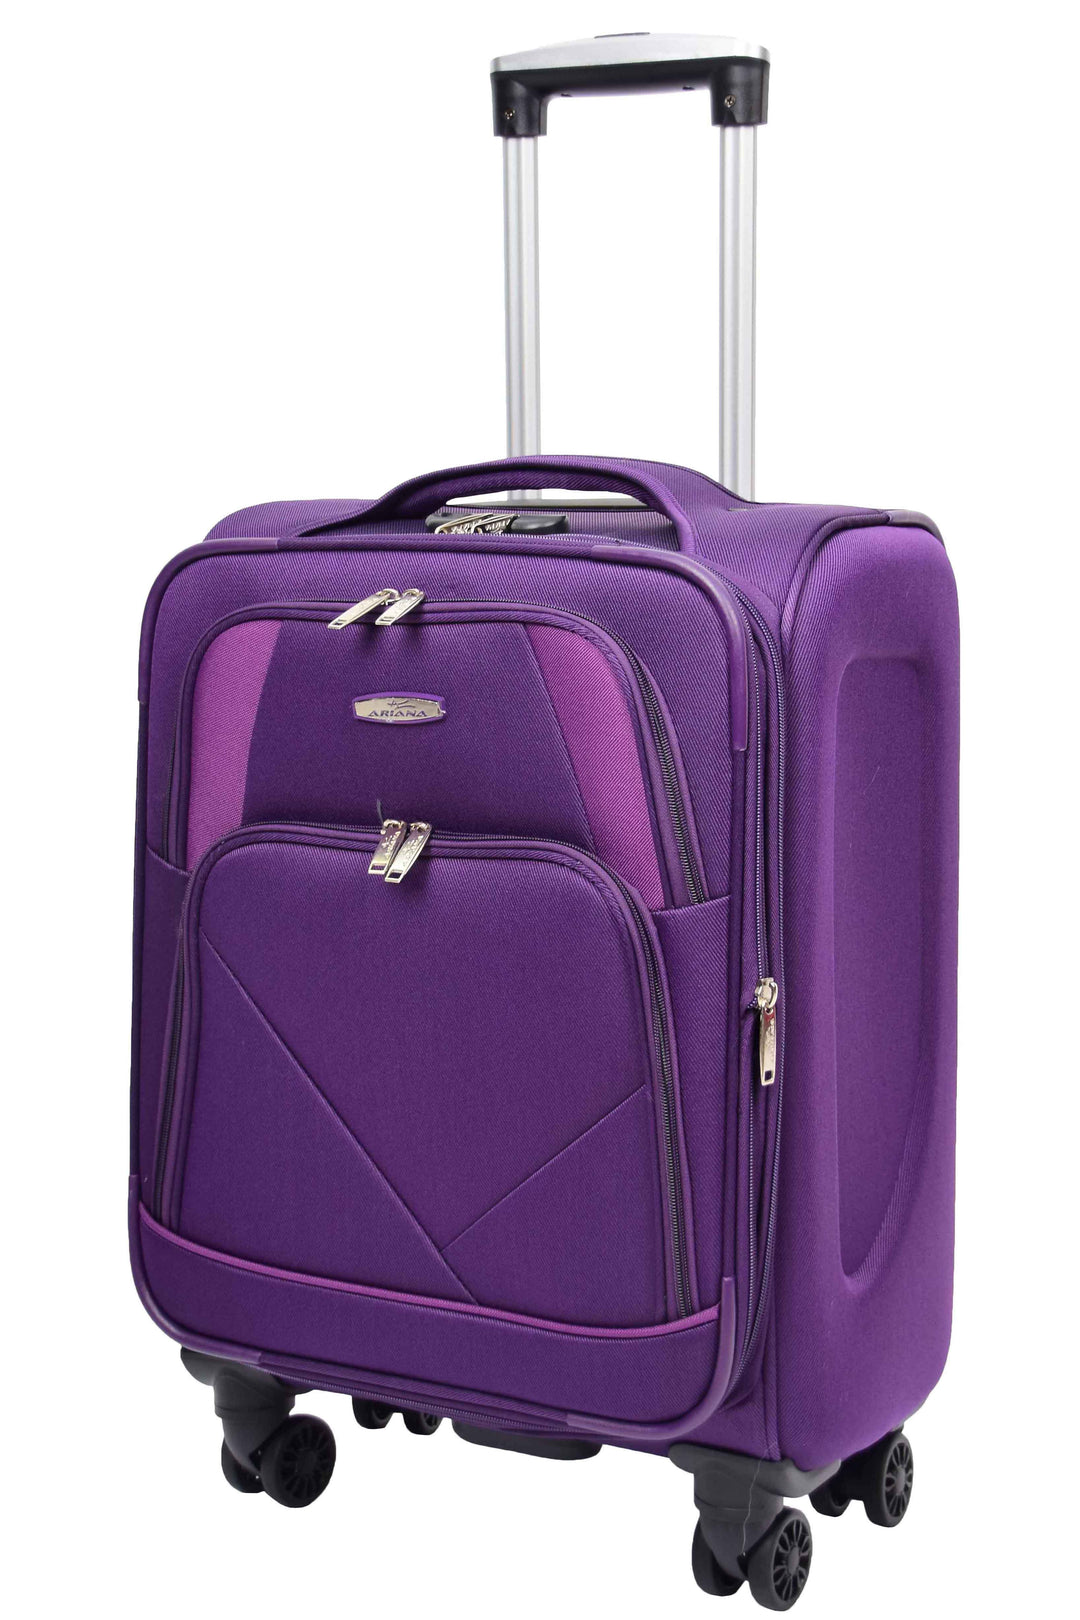 Guardian Lightweight Suitcase 58